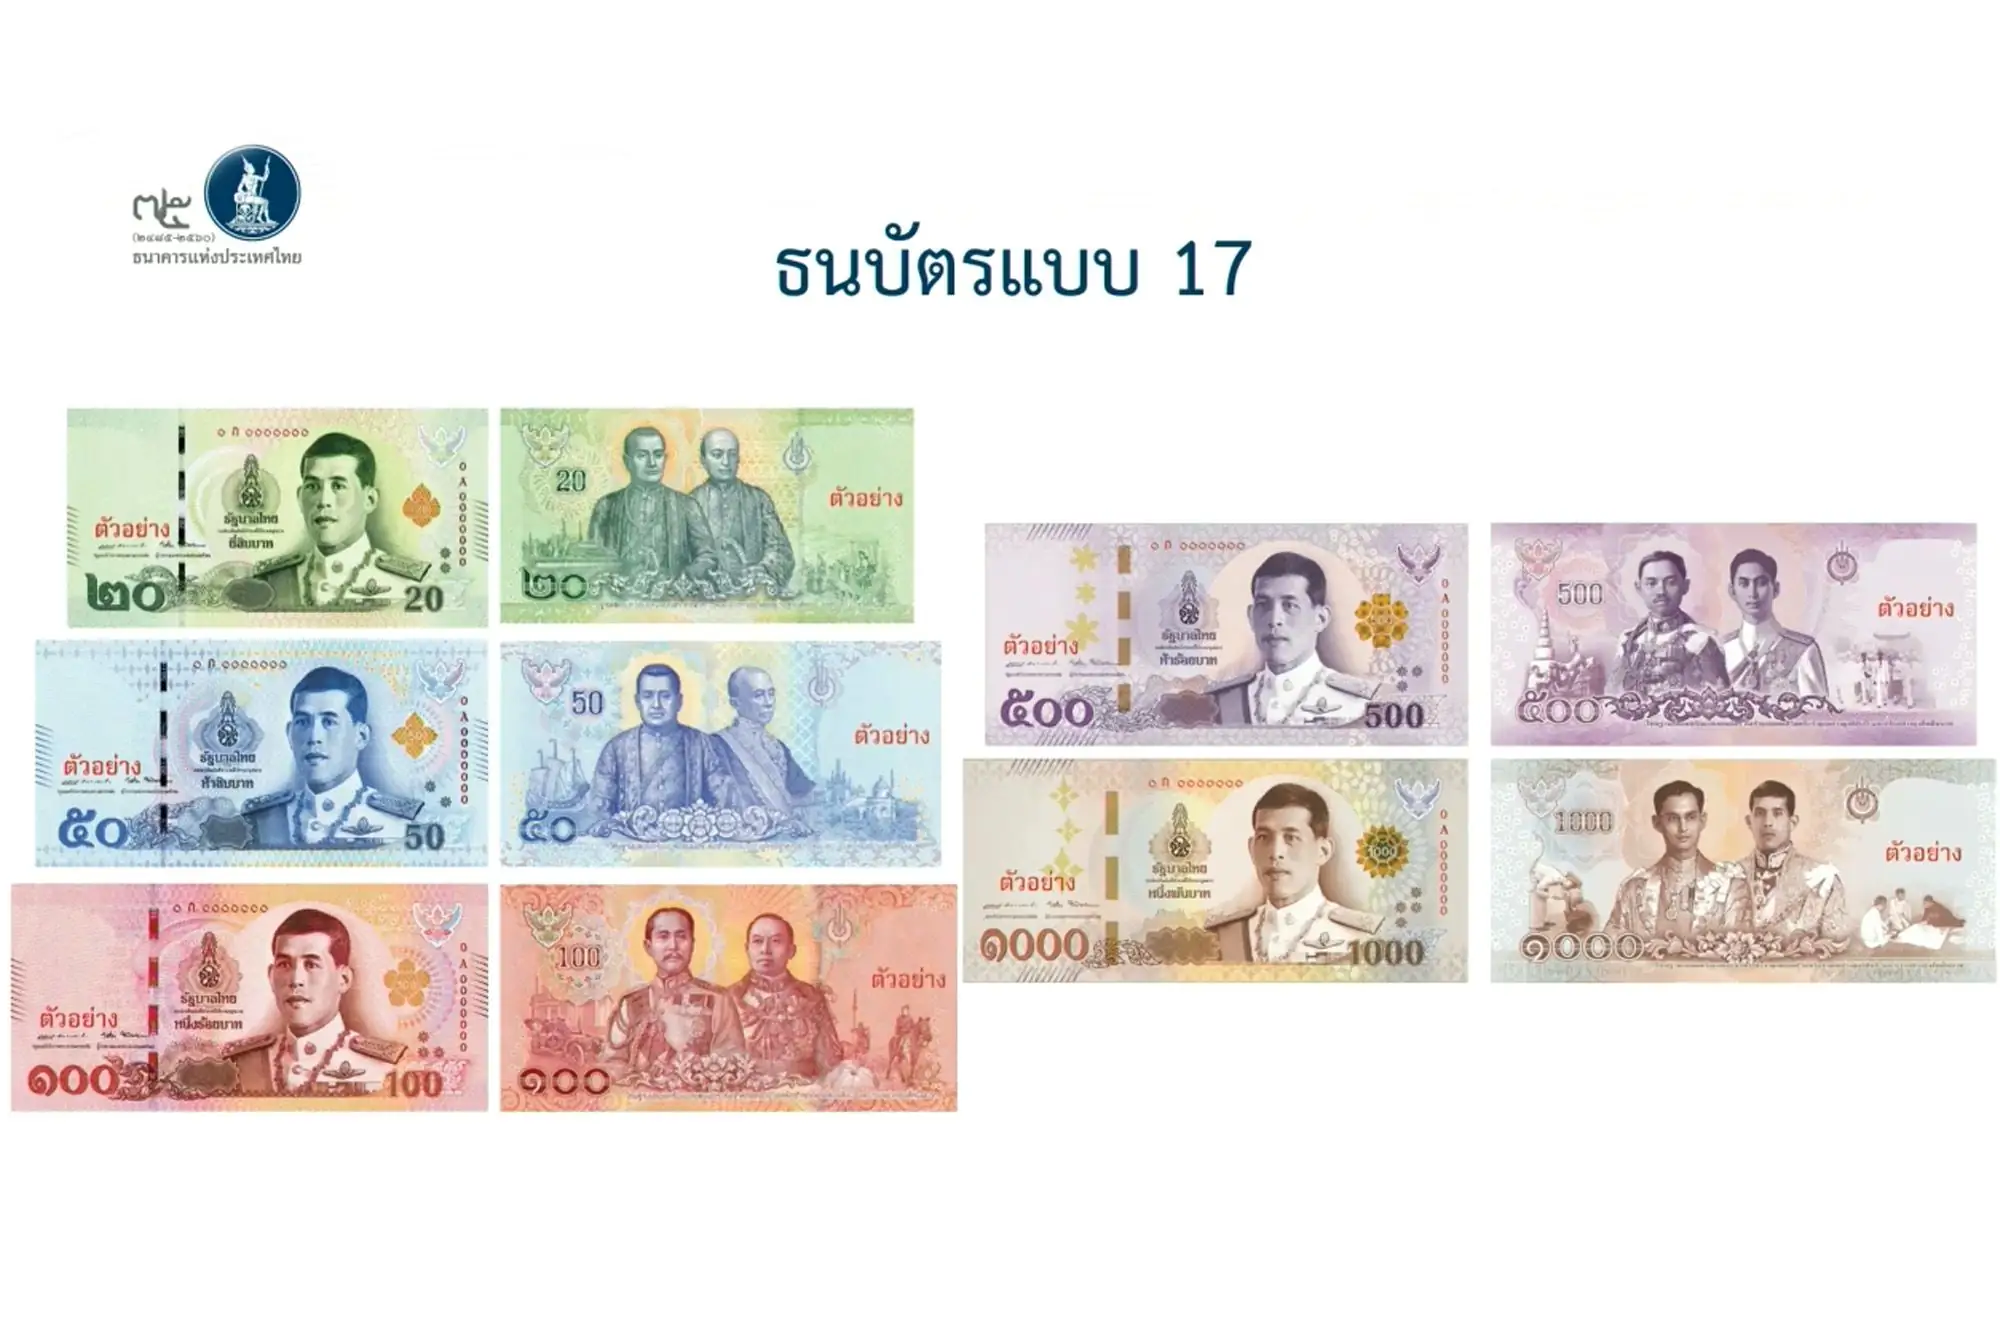 泰國央行 新版鈔票 拉瑪十世肖像 換鈔